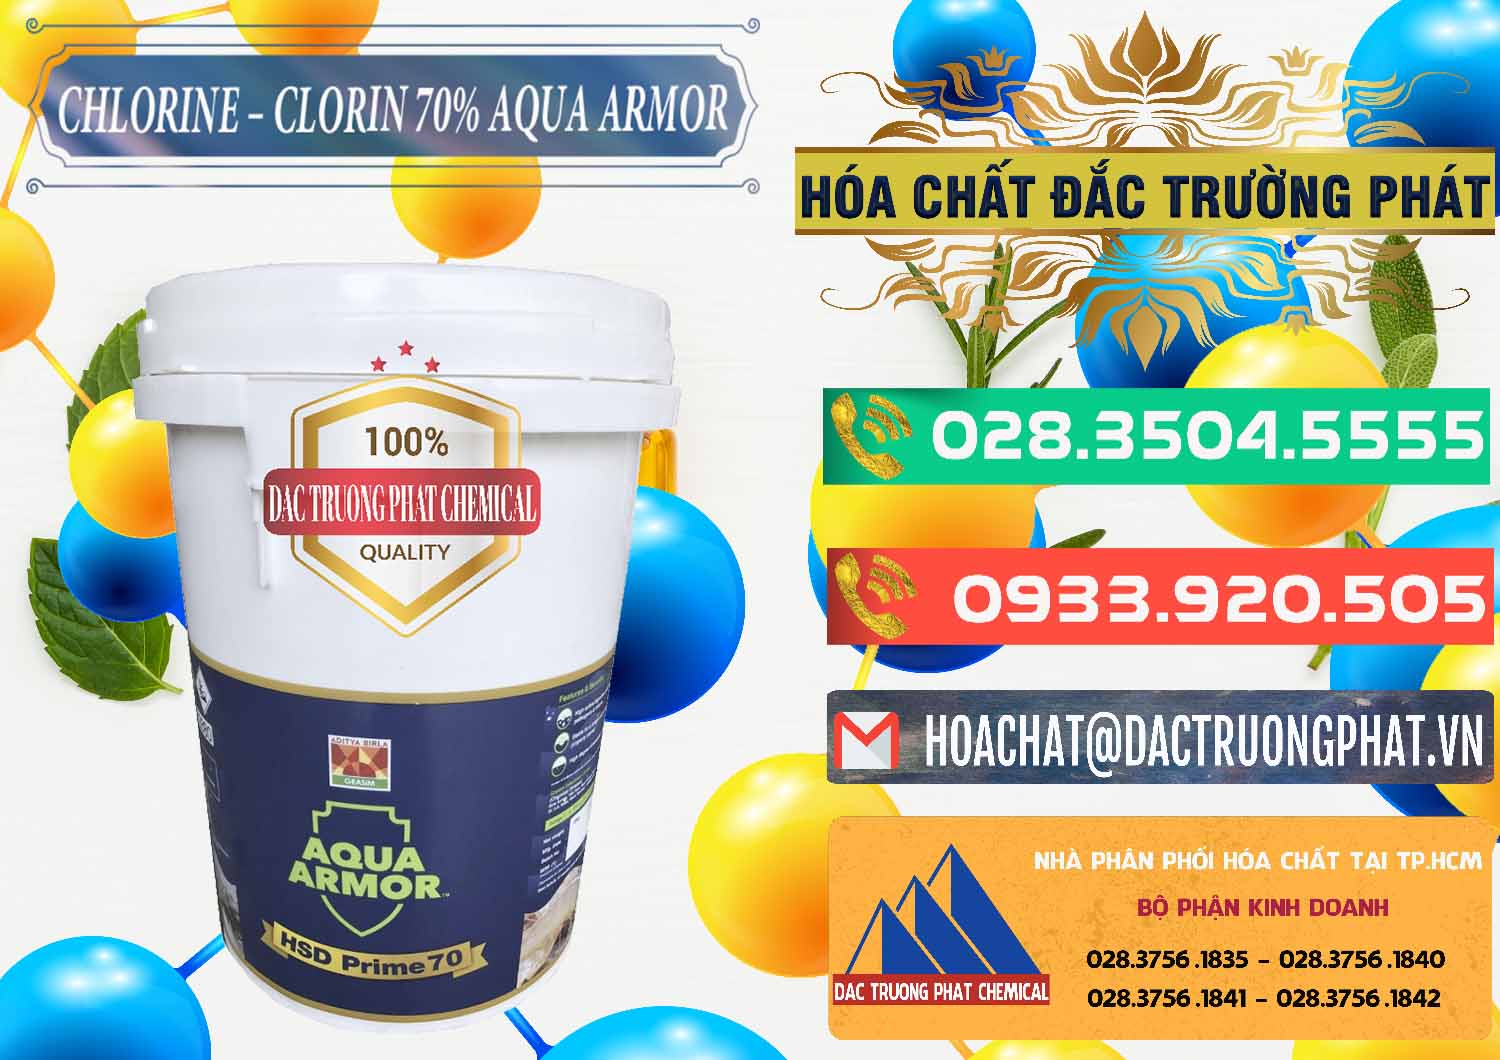 Nơi chuyên bán _ phân phối Chlorine – Clorin 70% Aqua Armor Aditya Birla Grasim Ấn Độ India - 0241 - Chuyên cung cấp _ bán hóa chất tại TP.HCM - congtyhoachat.com.vn